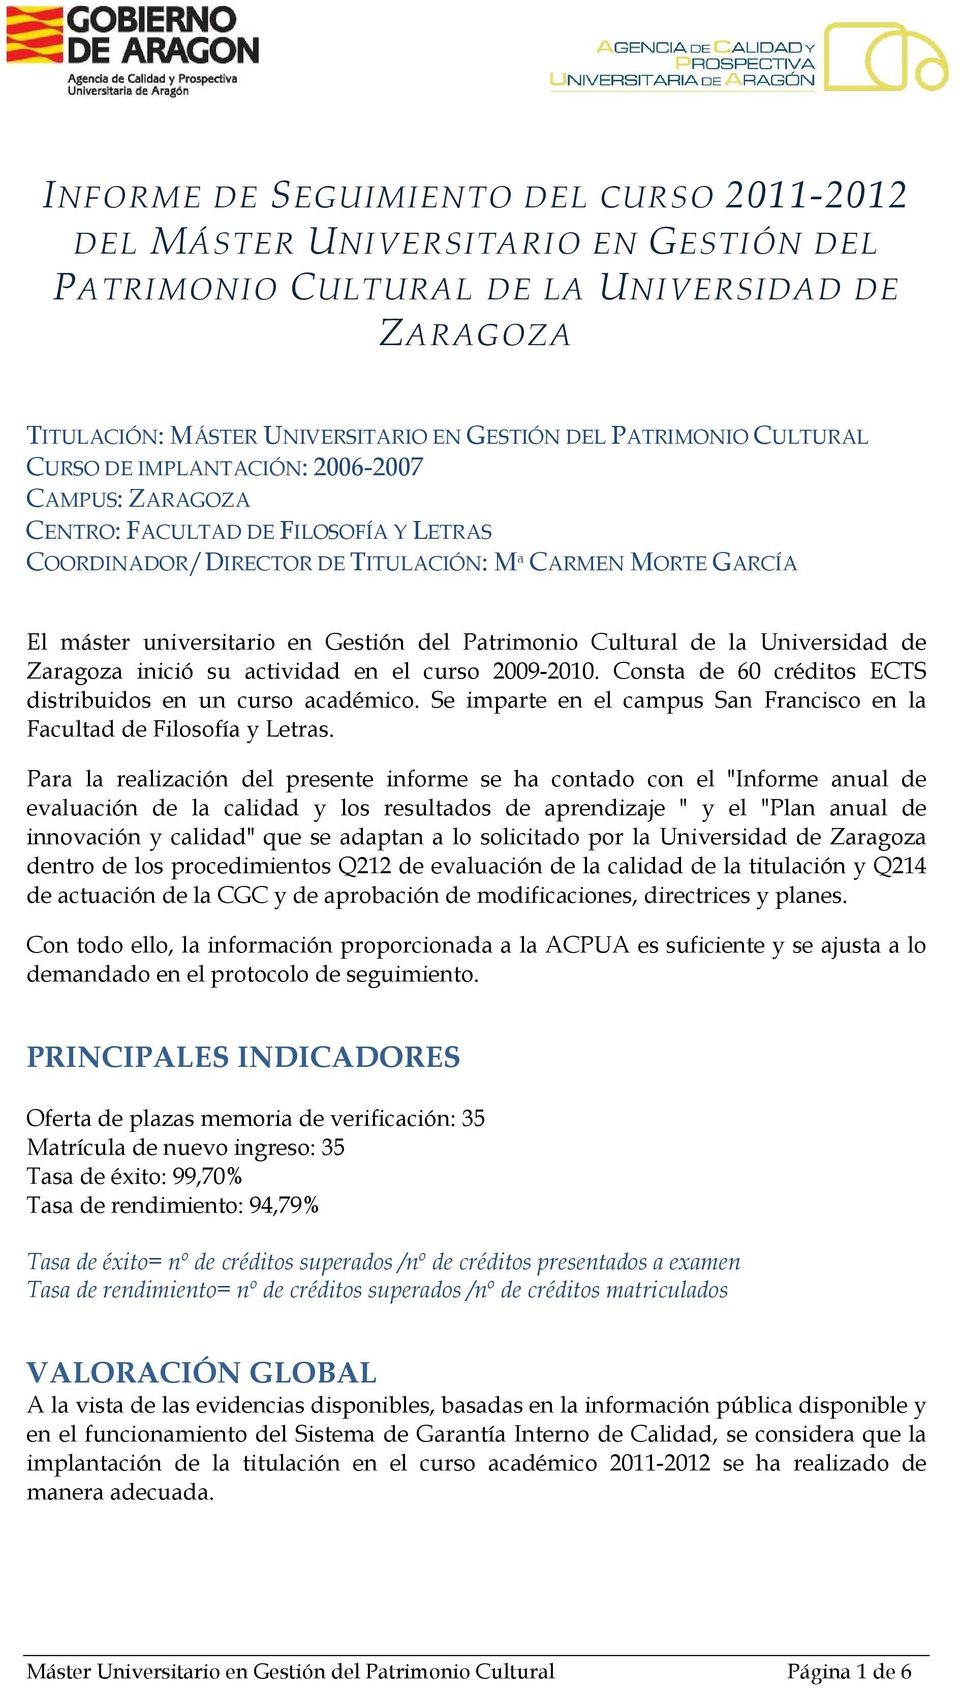 Patrimonio Cultural de la Universidad de Zaragoza inició su actividad en el curso 2009-2010. Consta de 60 créditos ECTS distribuidos en un curso académico.